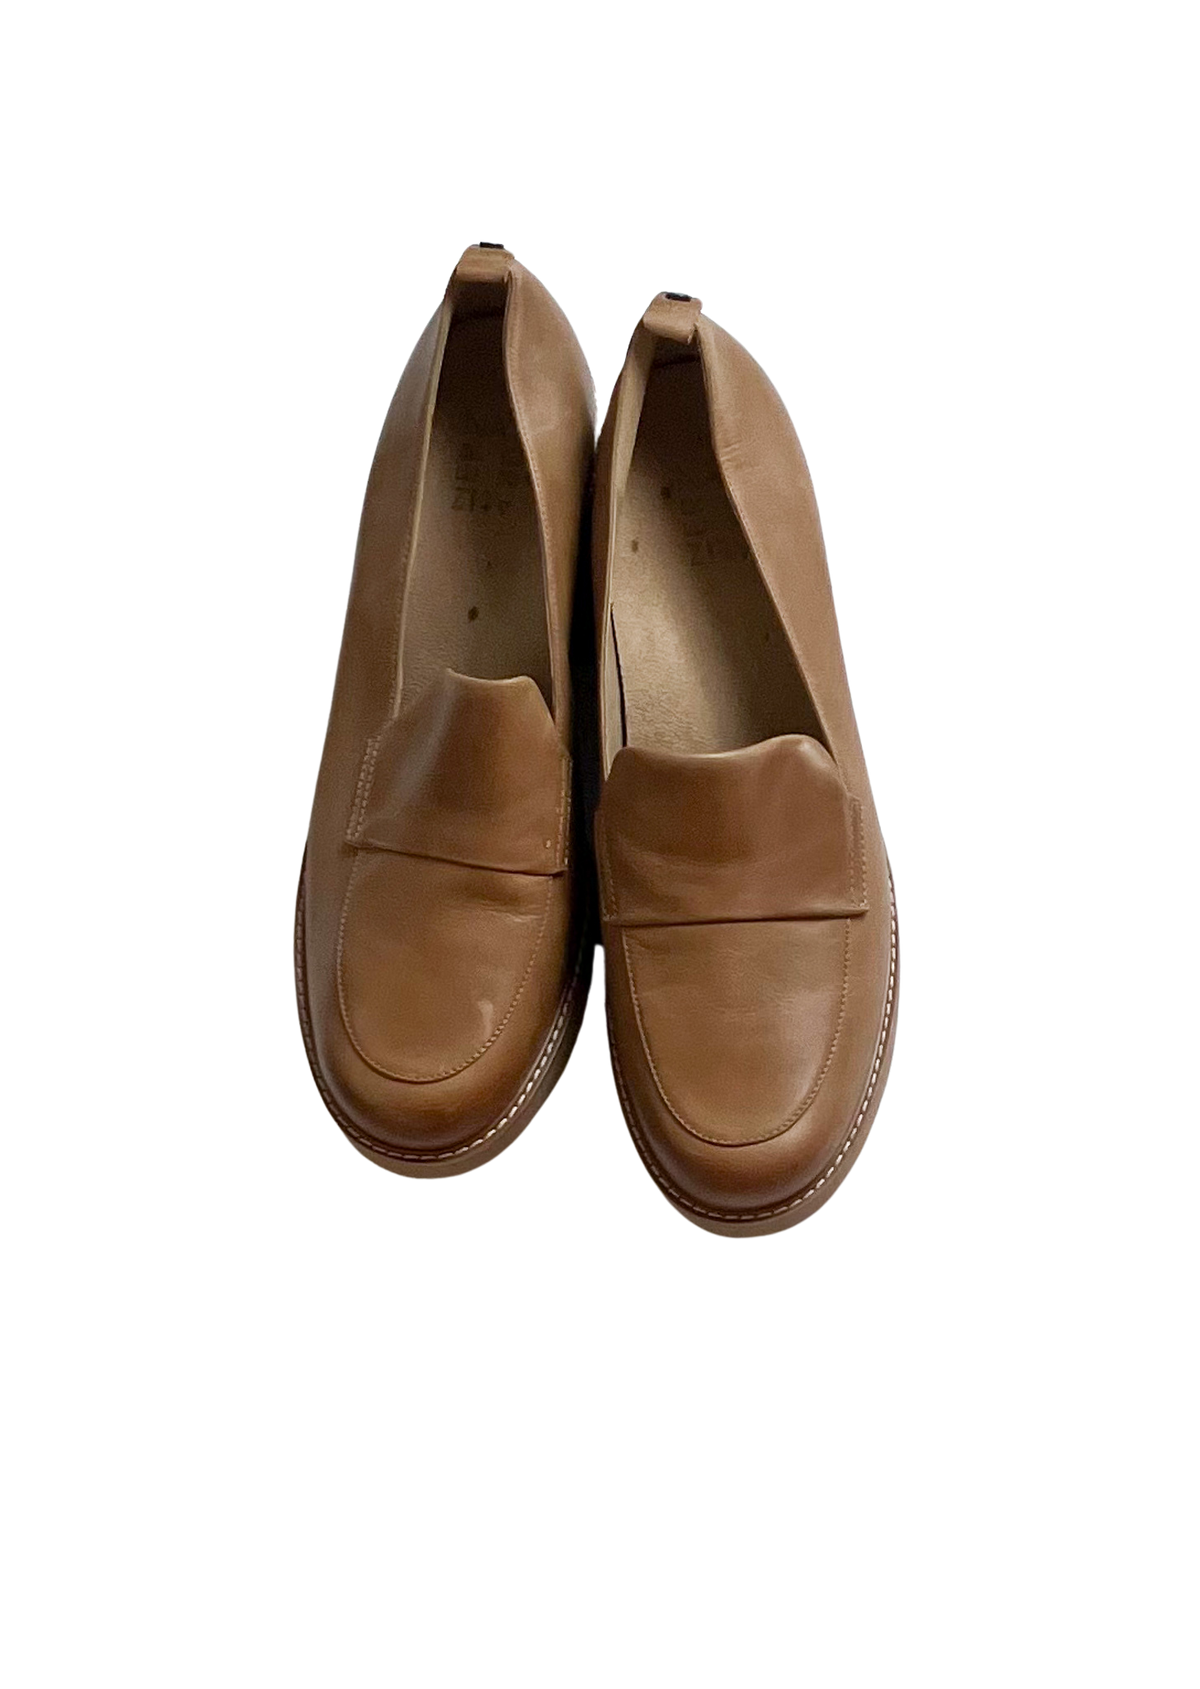 Naturalizer- Brown Platform Loafers